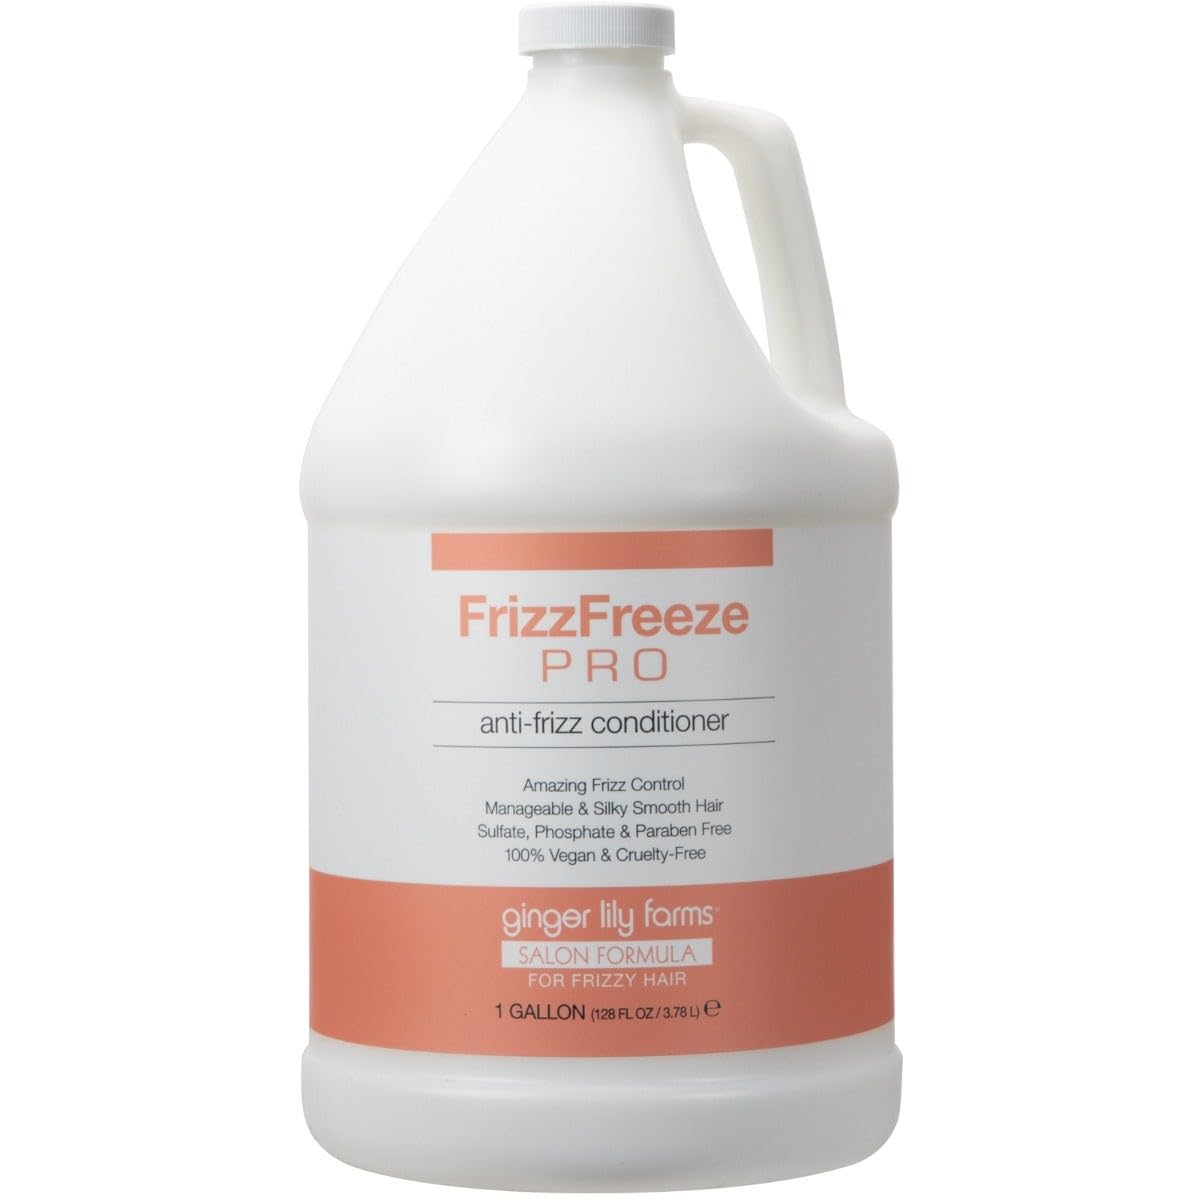 Ginger Lily Farms Salon Formula FrizzFreeze Pro Anti-Frizz Conditioner for Frizzy Hair, 100% Vegan & Cruelty-Free, 1 Gallon (128 fl oz) Refill